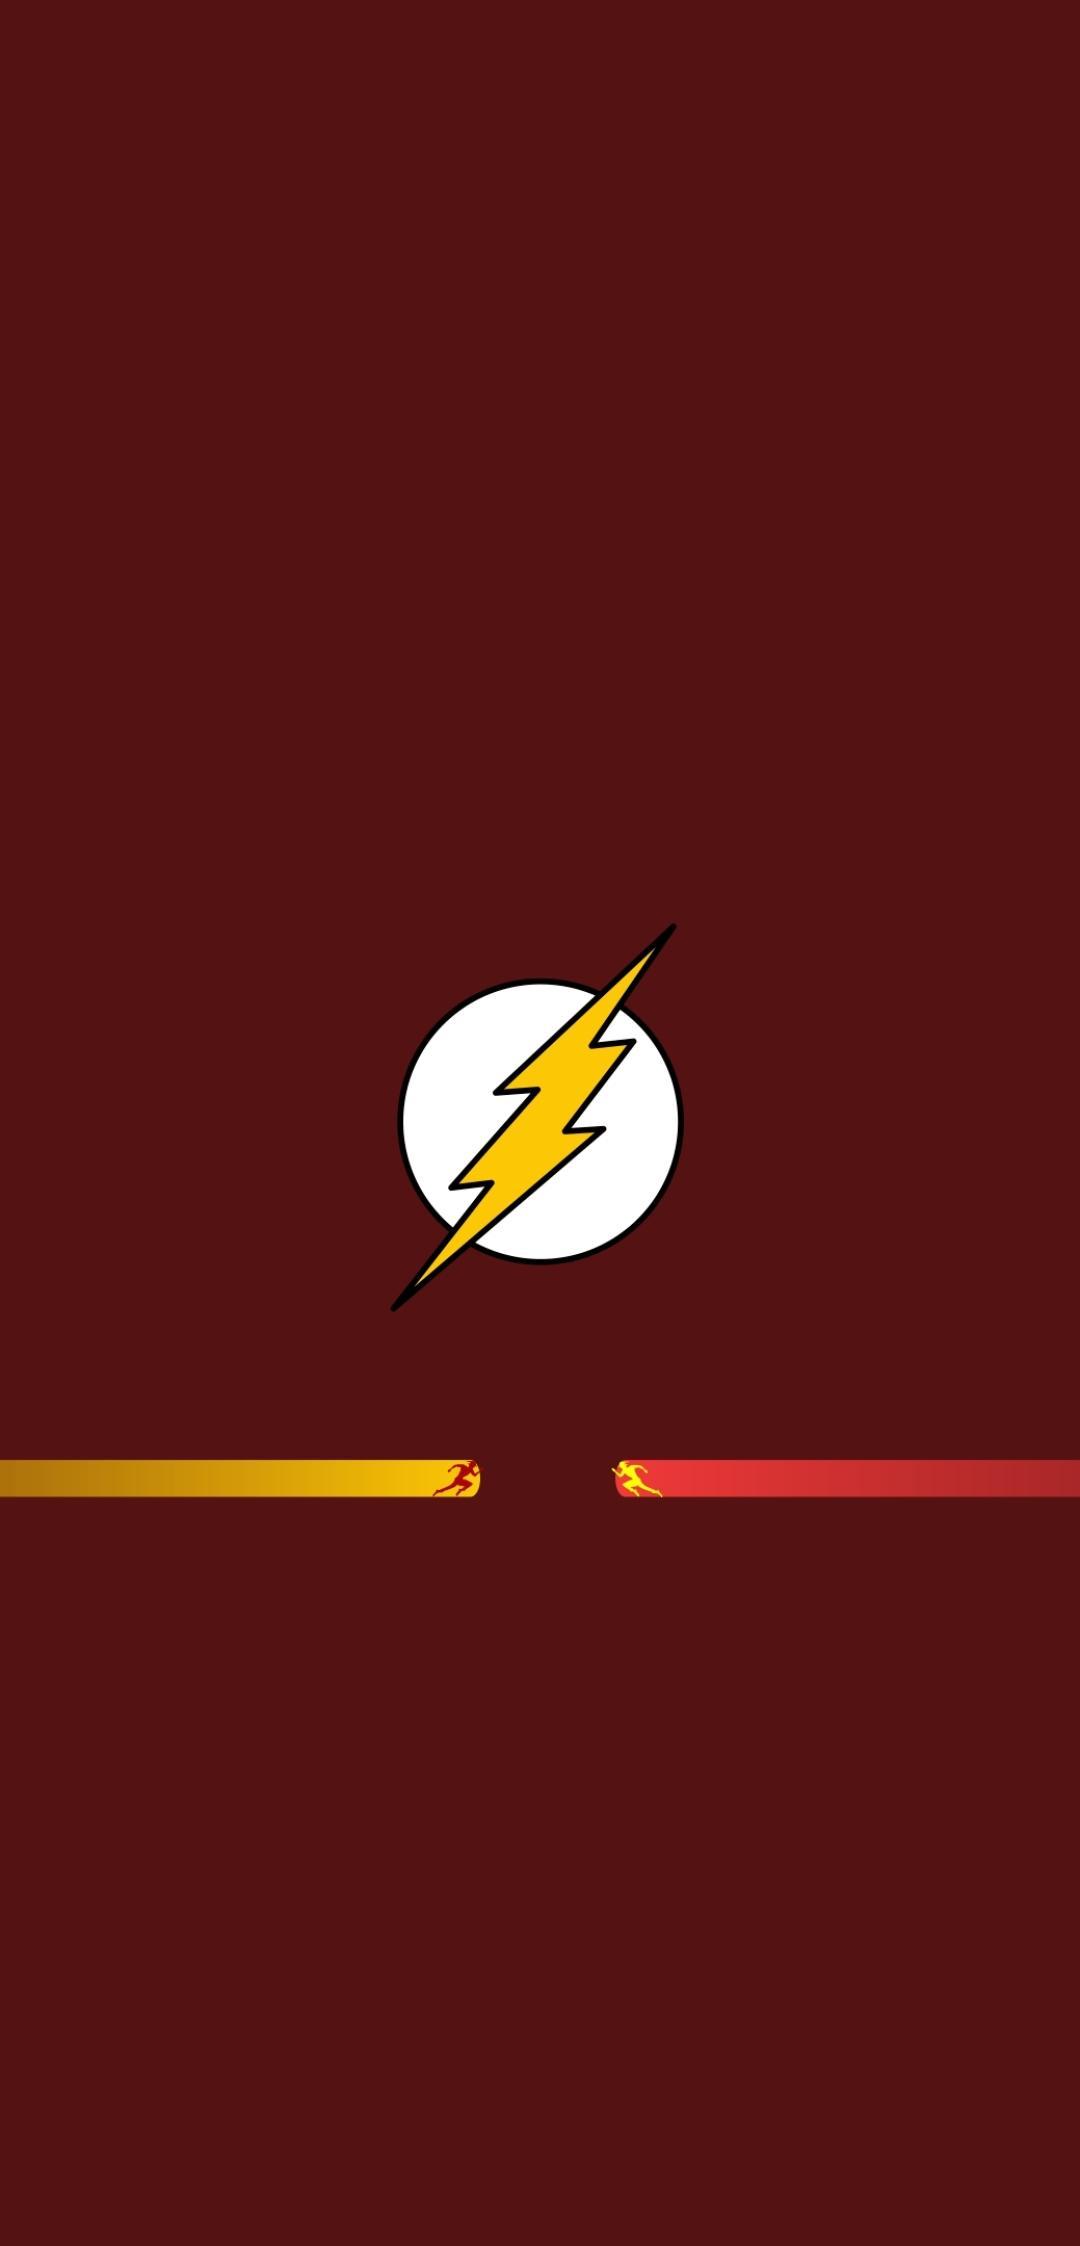 Comics Flash (1080x2246) Wallpaper